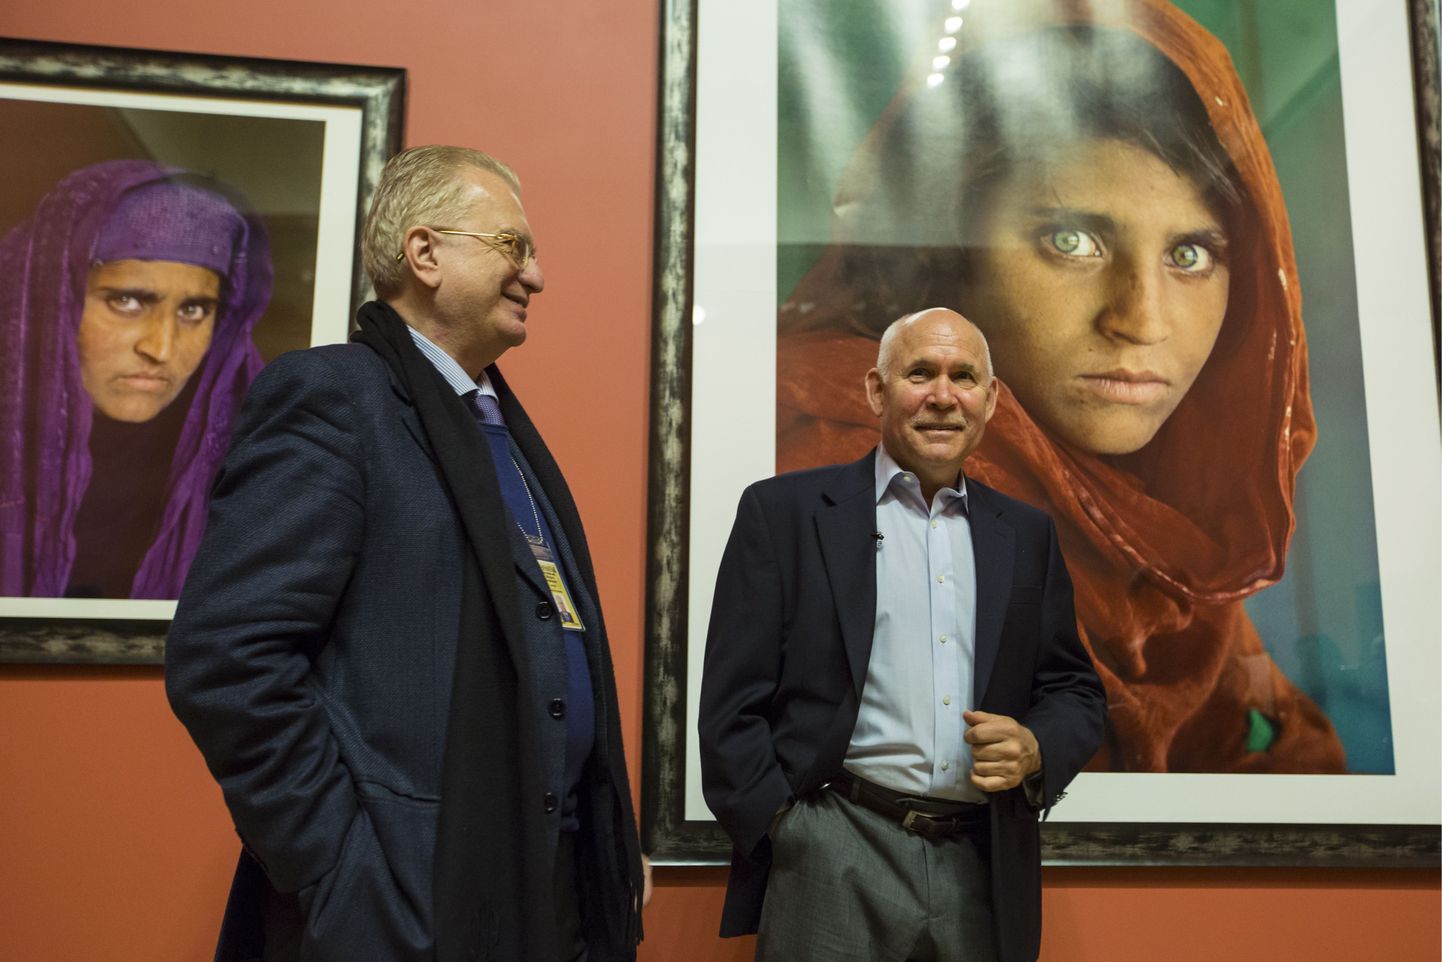 Sharbat Gula fotod, keskel fotograaf Steve McCurry